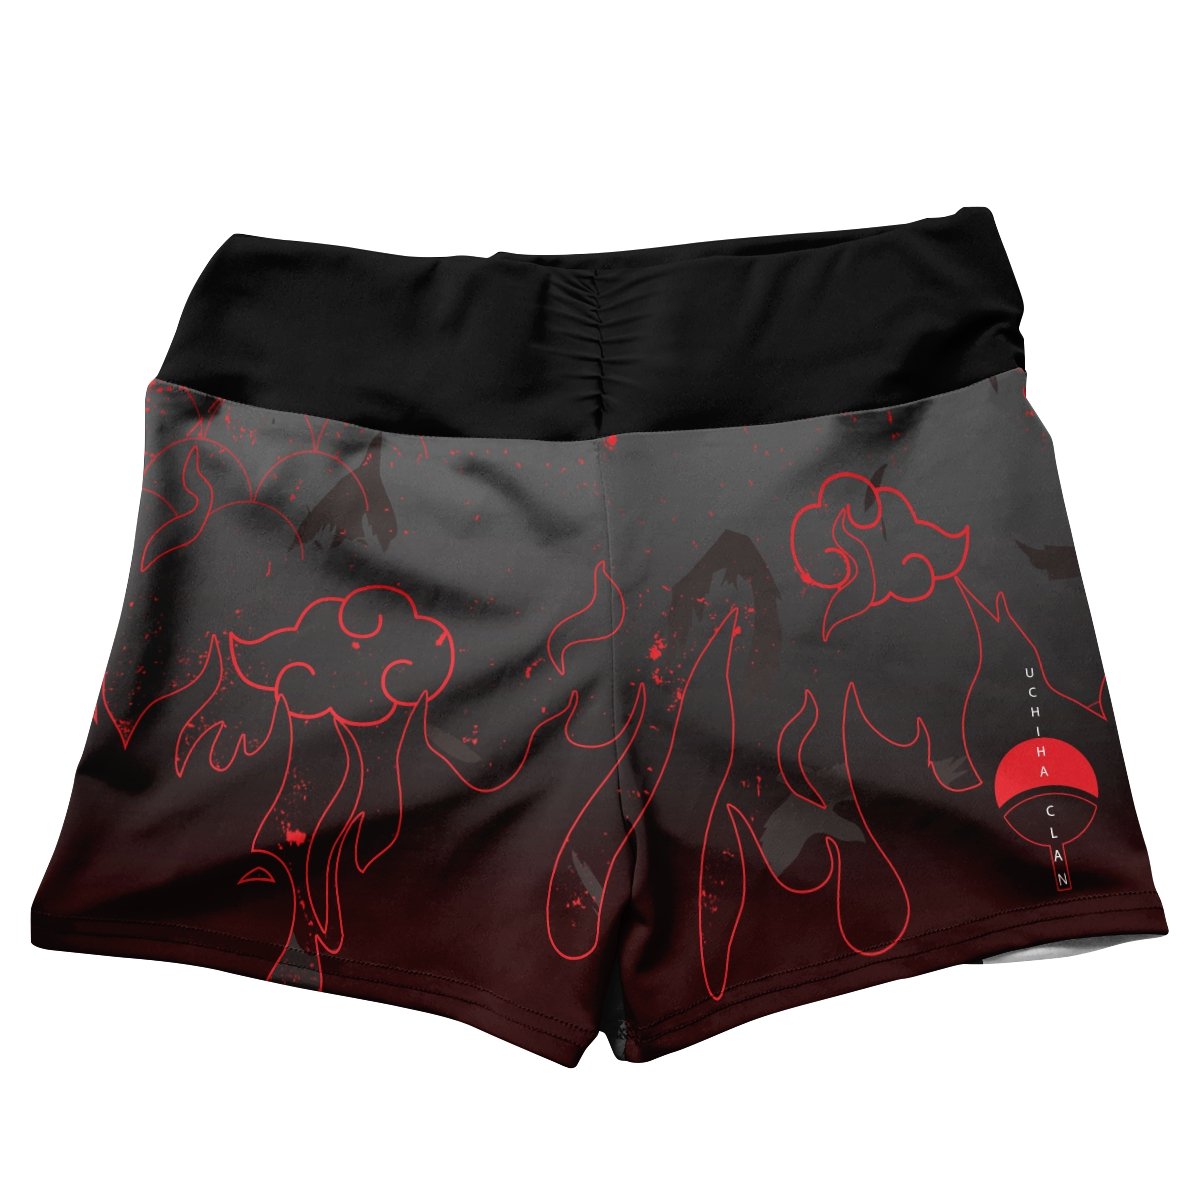 uchiha emblem active wear set 570089 - Anime Swimsuits